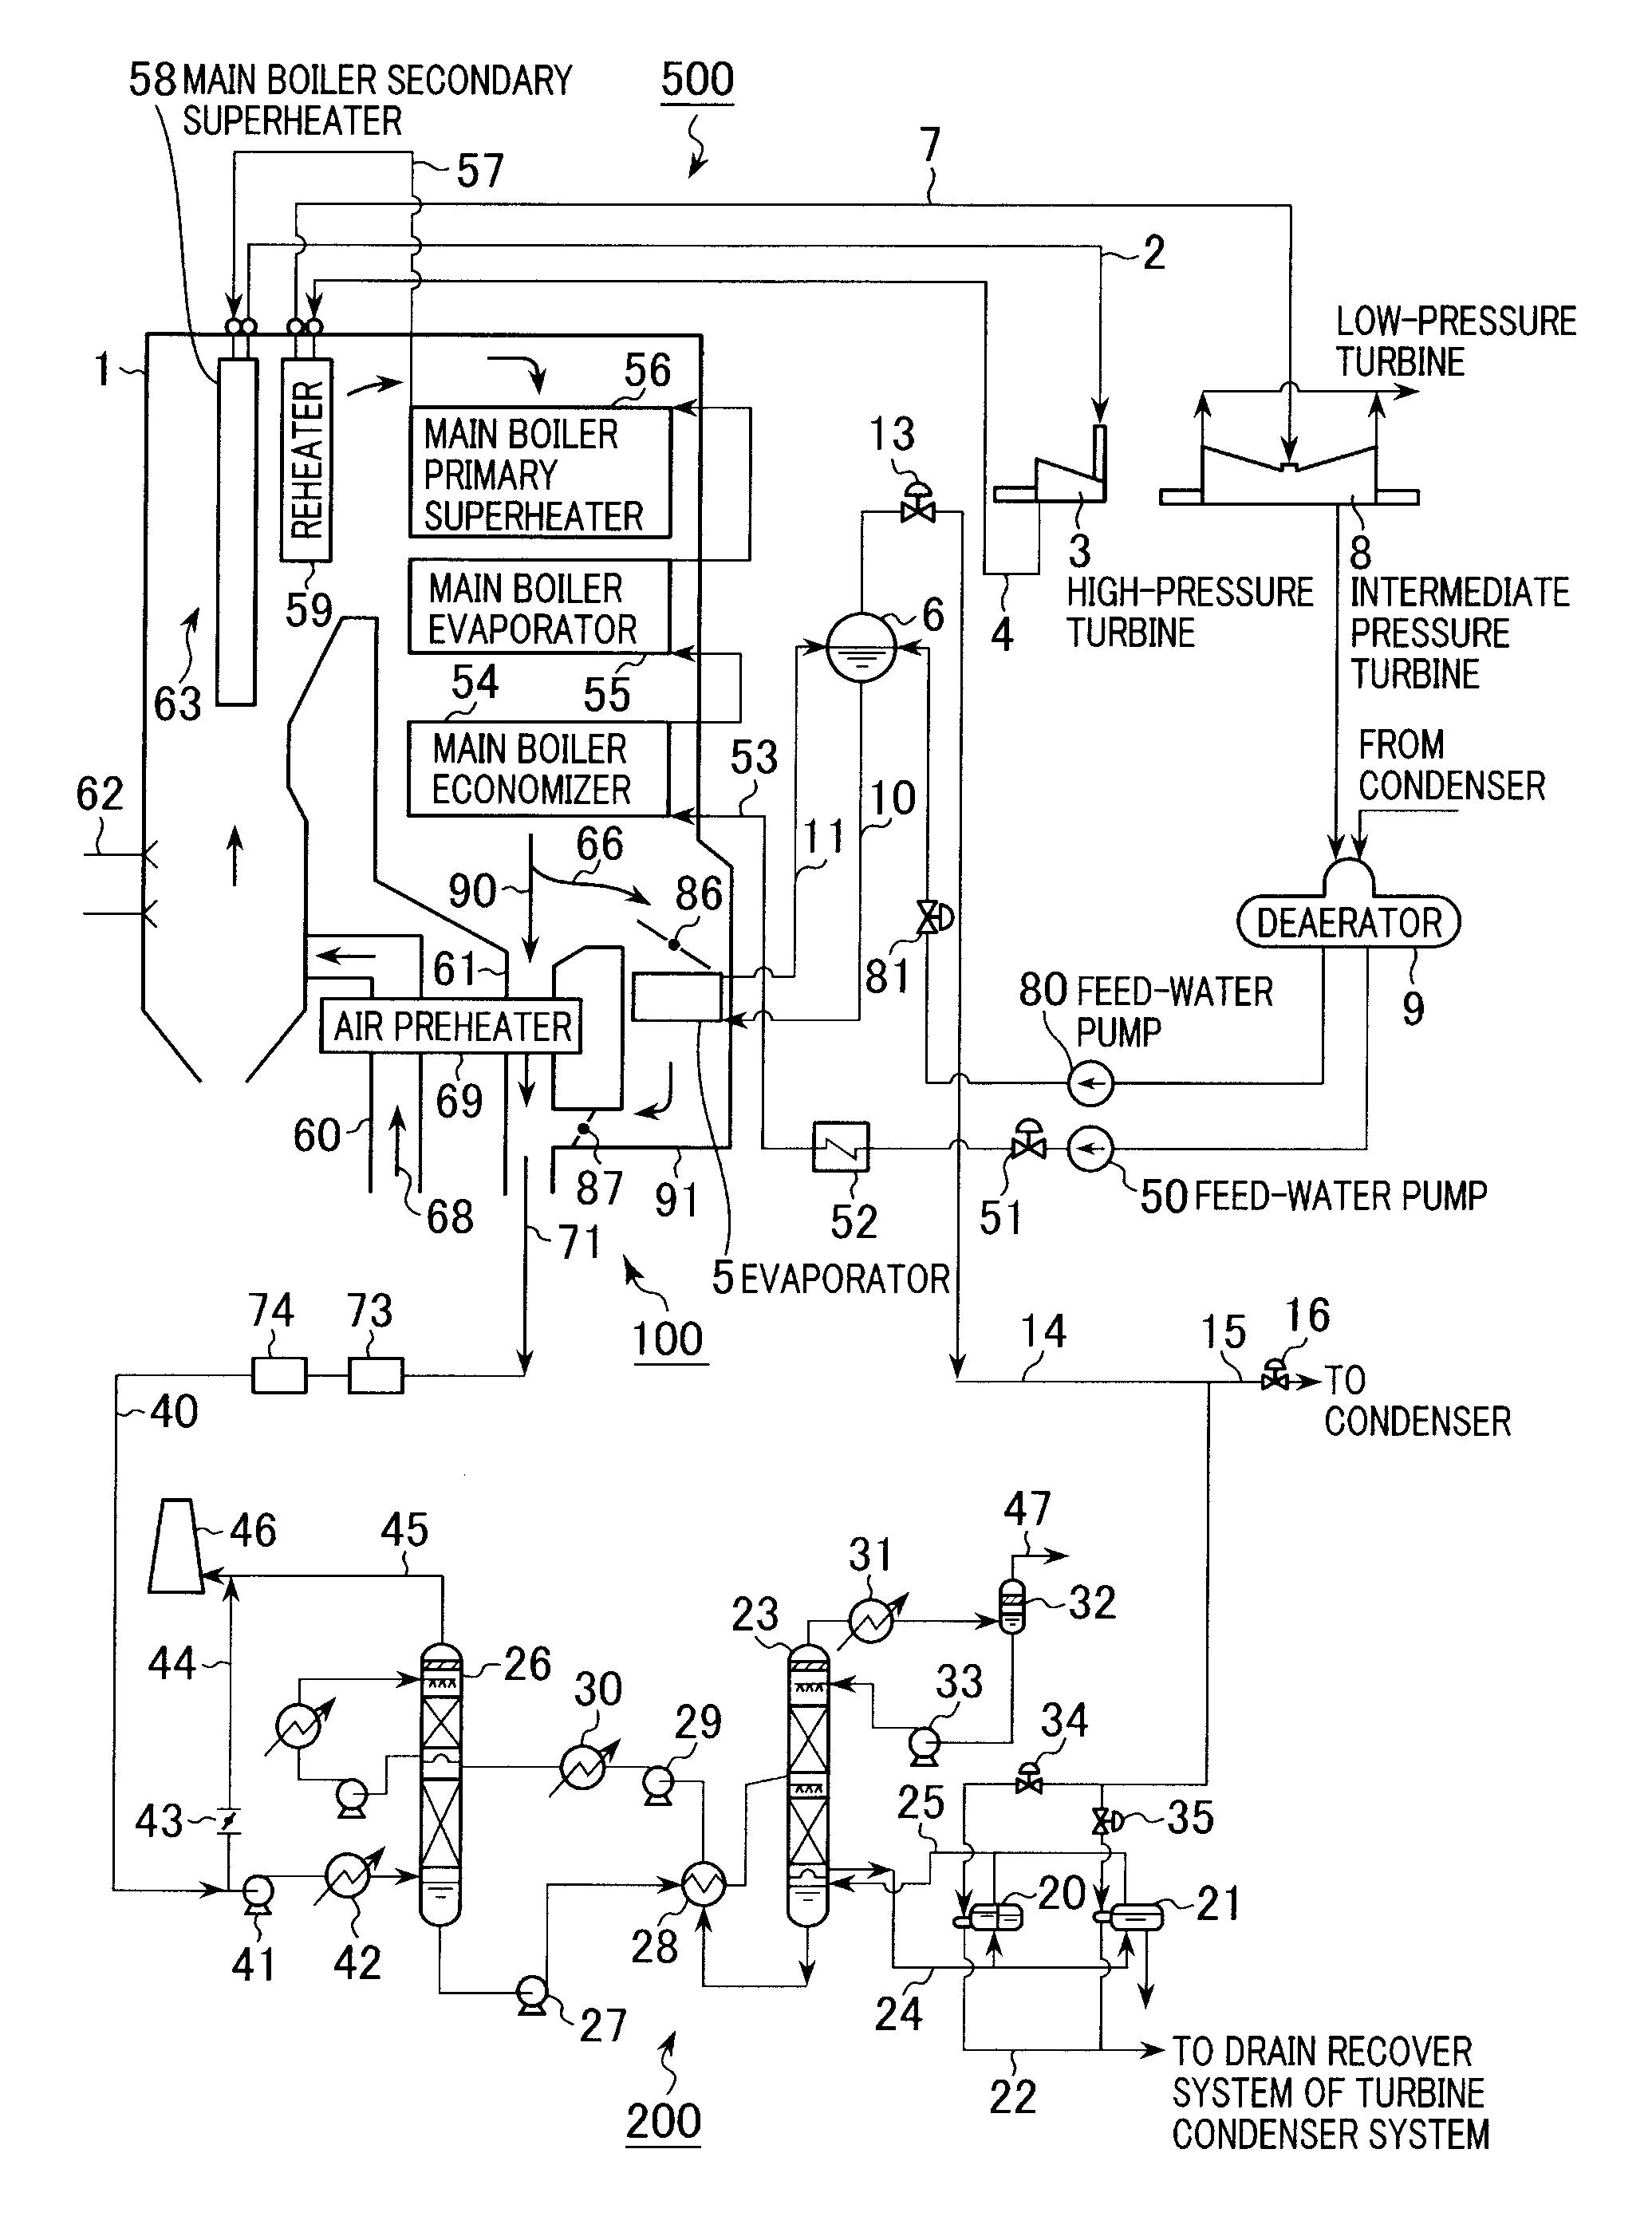 Boiler Apparatus